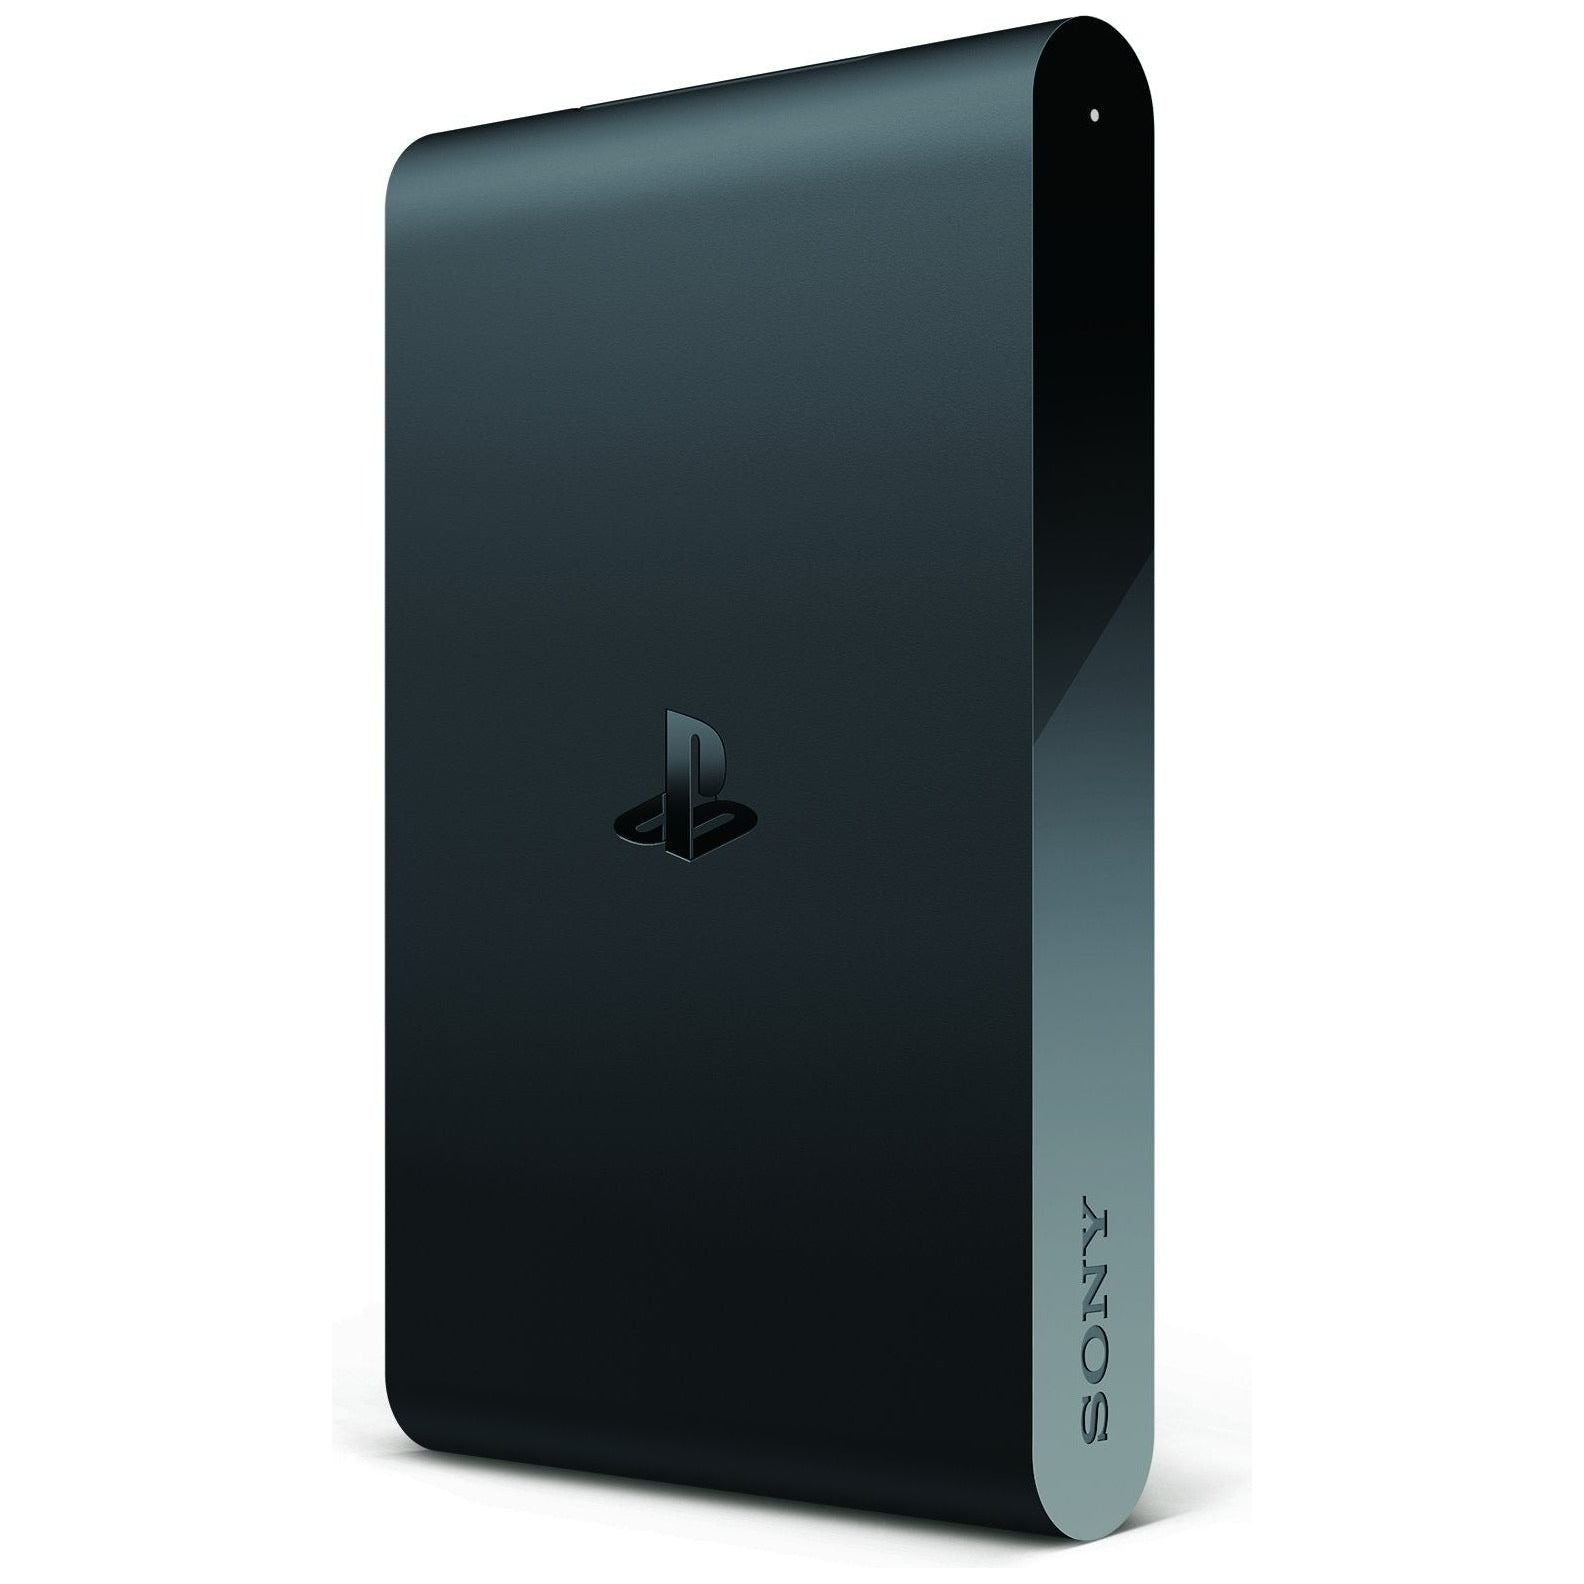 PlayStation TV System - 1GB